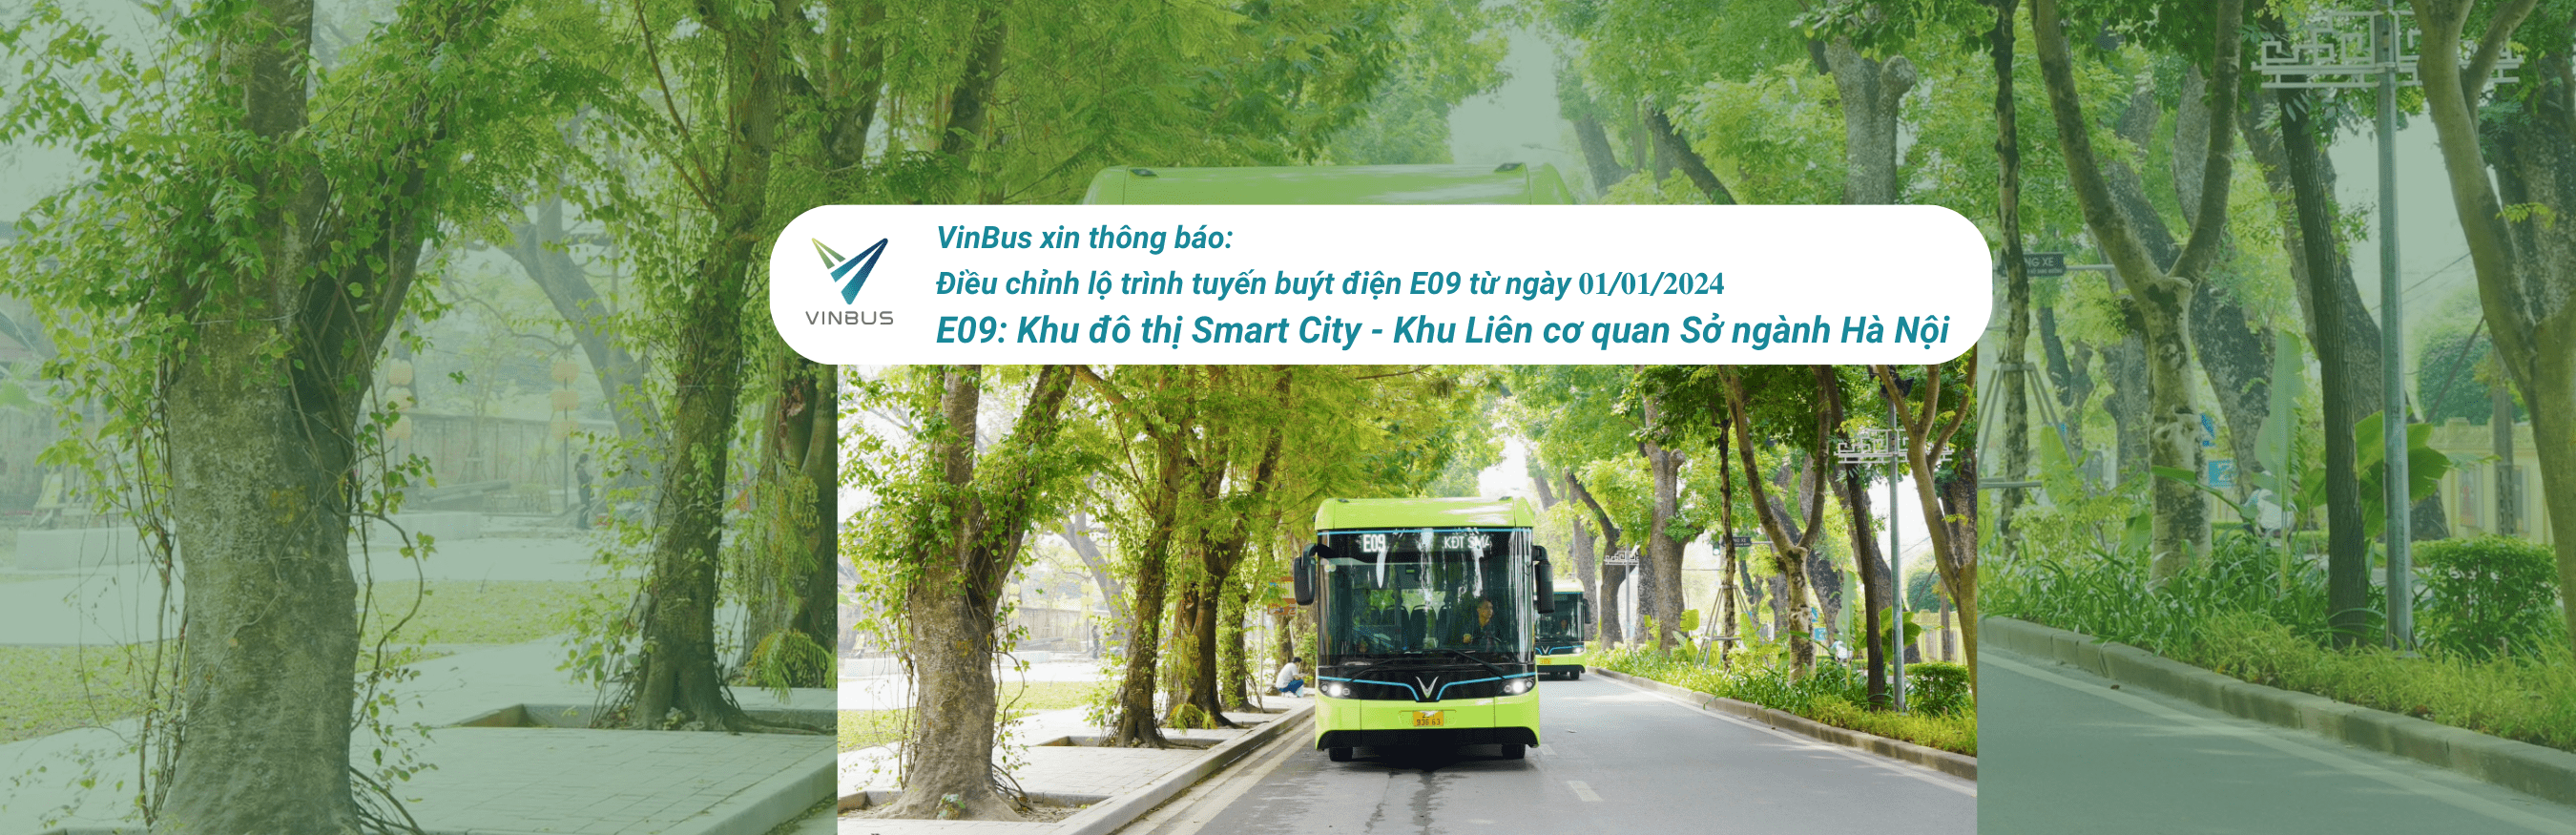 VinBus xin thông báo: Điều chỉnh lộ trình tuyến buýt điện 𝐄𝟎𝟗 từ ngày 𝟎𝟏/𝟎𝟏/𝟐𝟎𝟐𝟒.